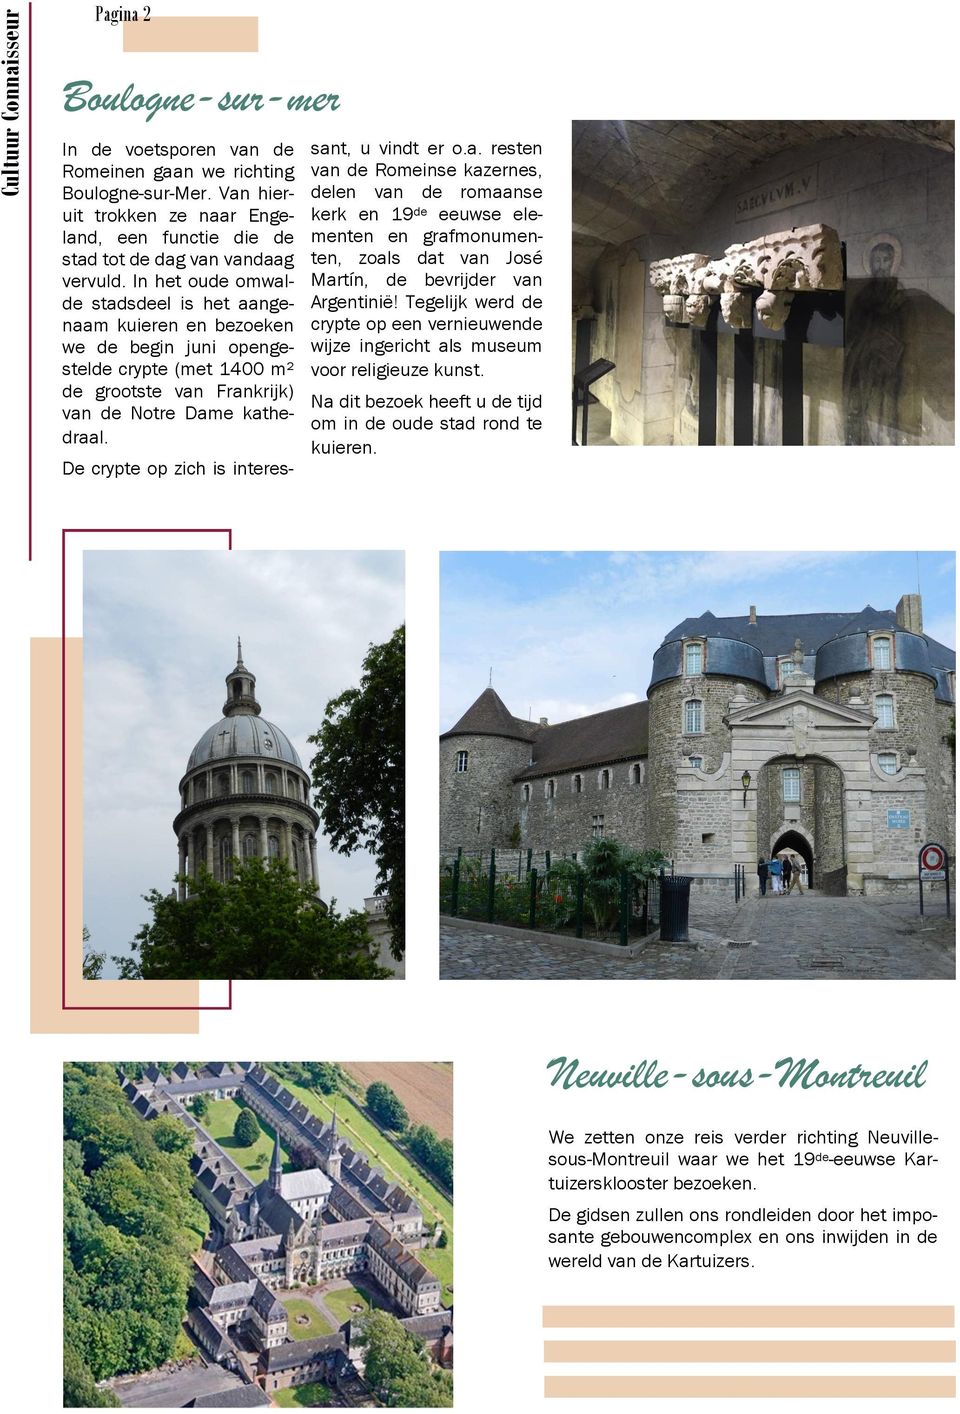 In het oude omwalde stadsdeel is het aangenaam kuieren en bezoeken we de begin juni opengestelde crypte (met 1400 m² de grootste van Frankrijk) van de Notre Dame kathedraal.